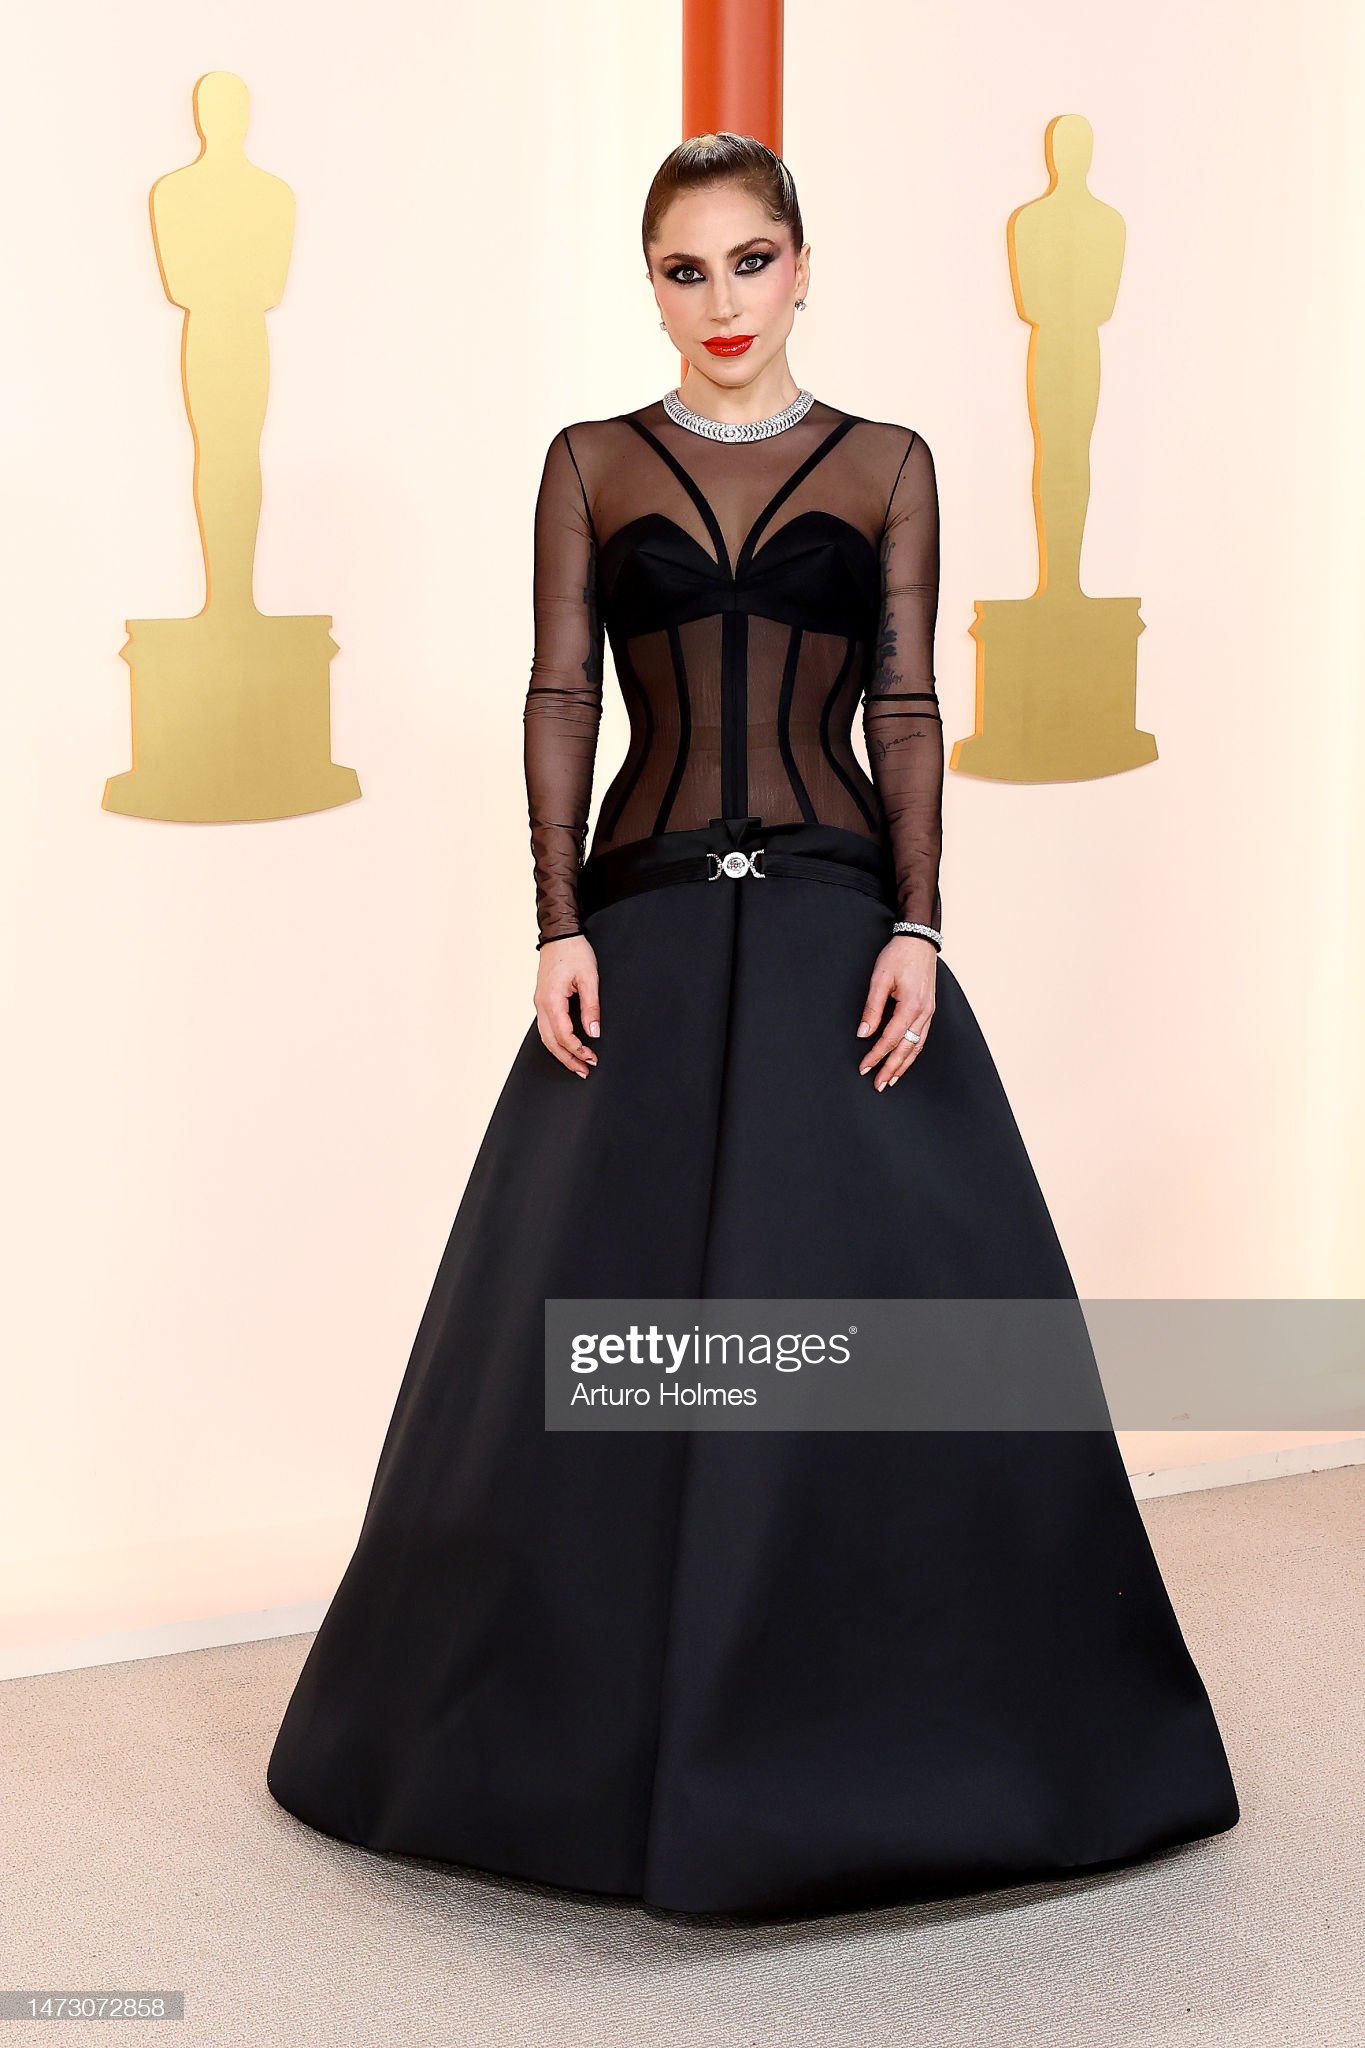 Mỹ nhân Oscar qua ống kính hung thần Getty Images: Phạm Băng Băng - Cara Delevingne đẹp phát choáng, Lady Gaga hóa thảm họa - Ảnh 11.